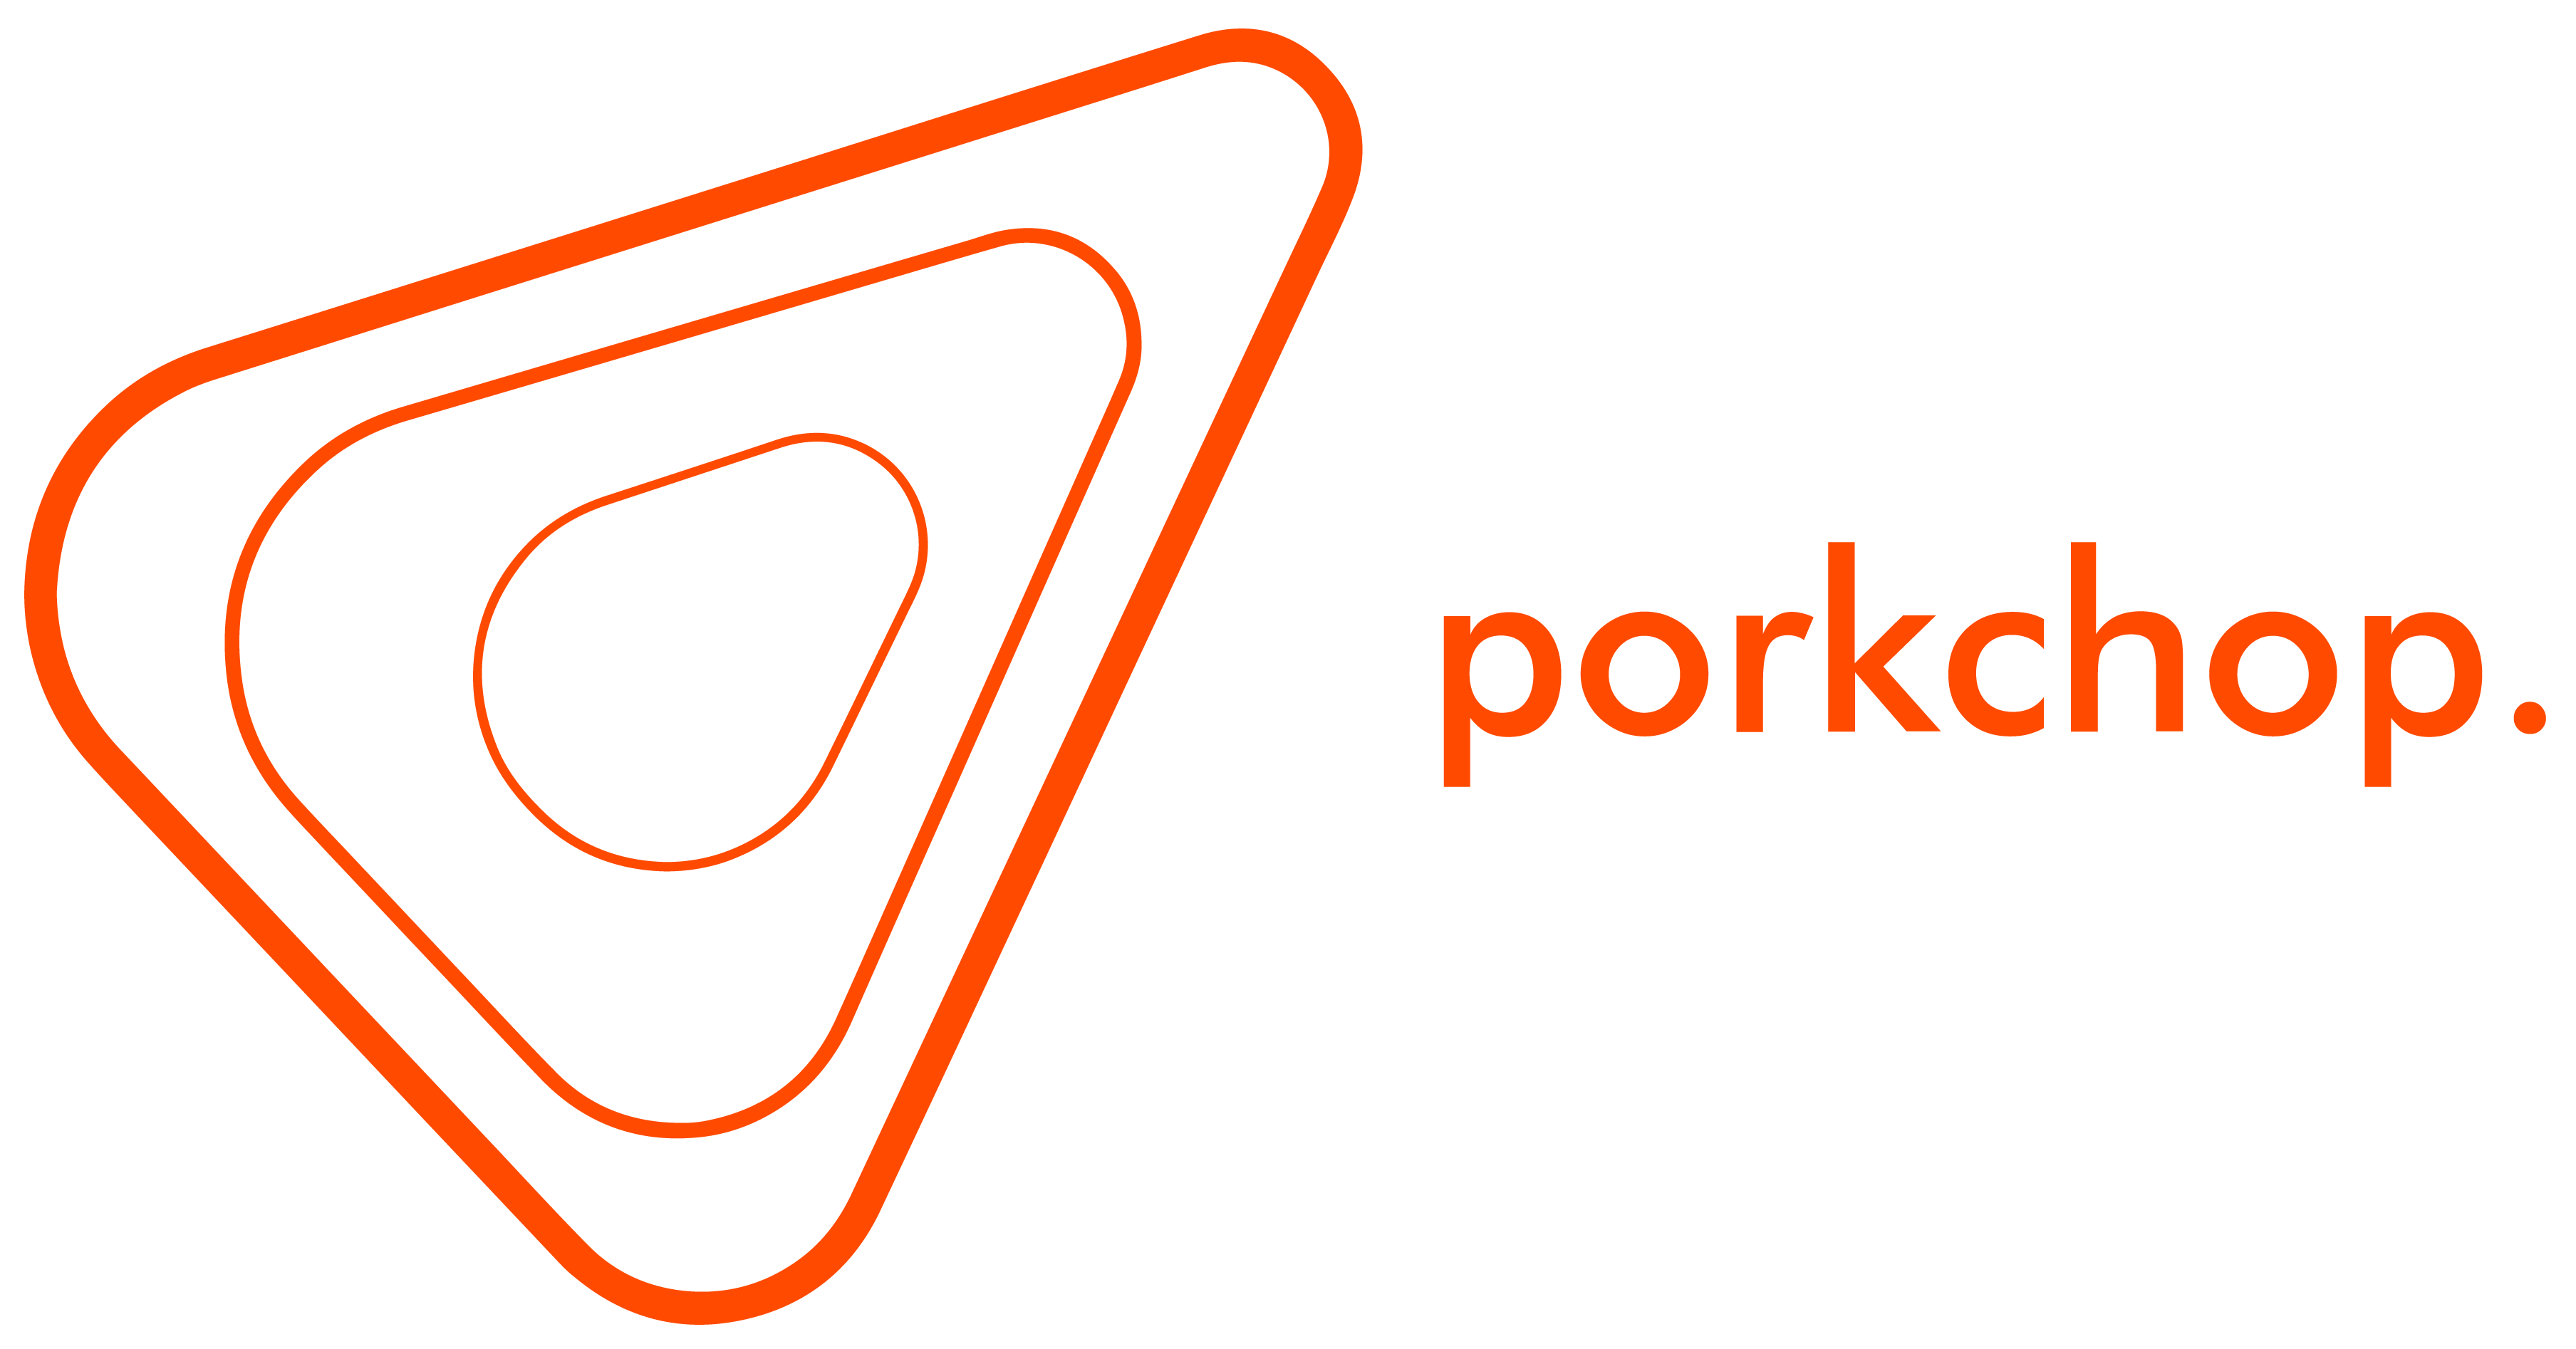 Porkchop logo